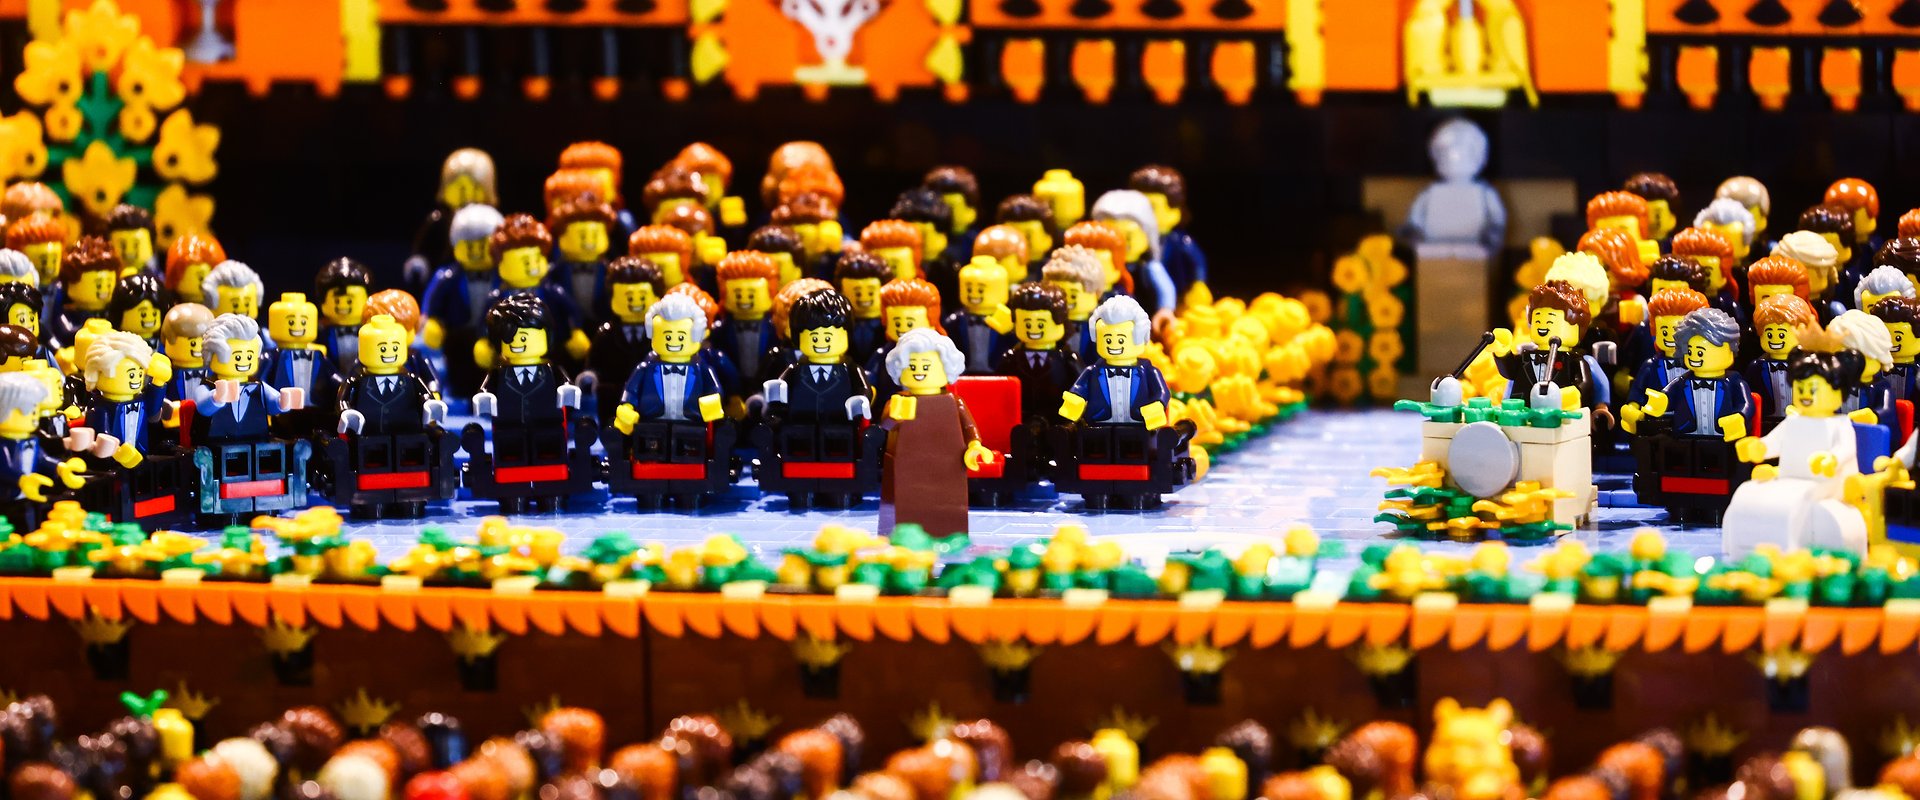 LEGO w hołdzie Wisławie Szymborskiej - wyjątkowa makieta z klocków